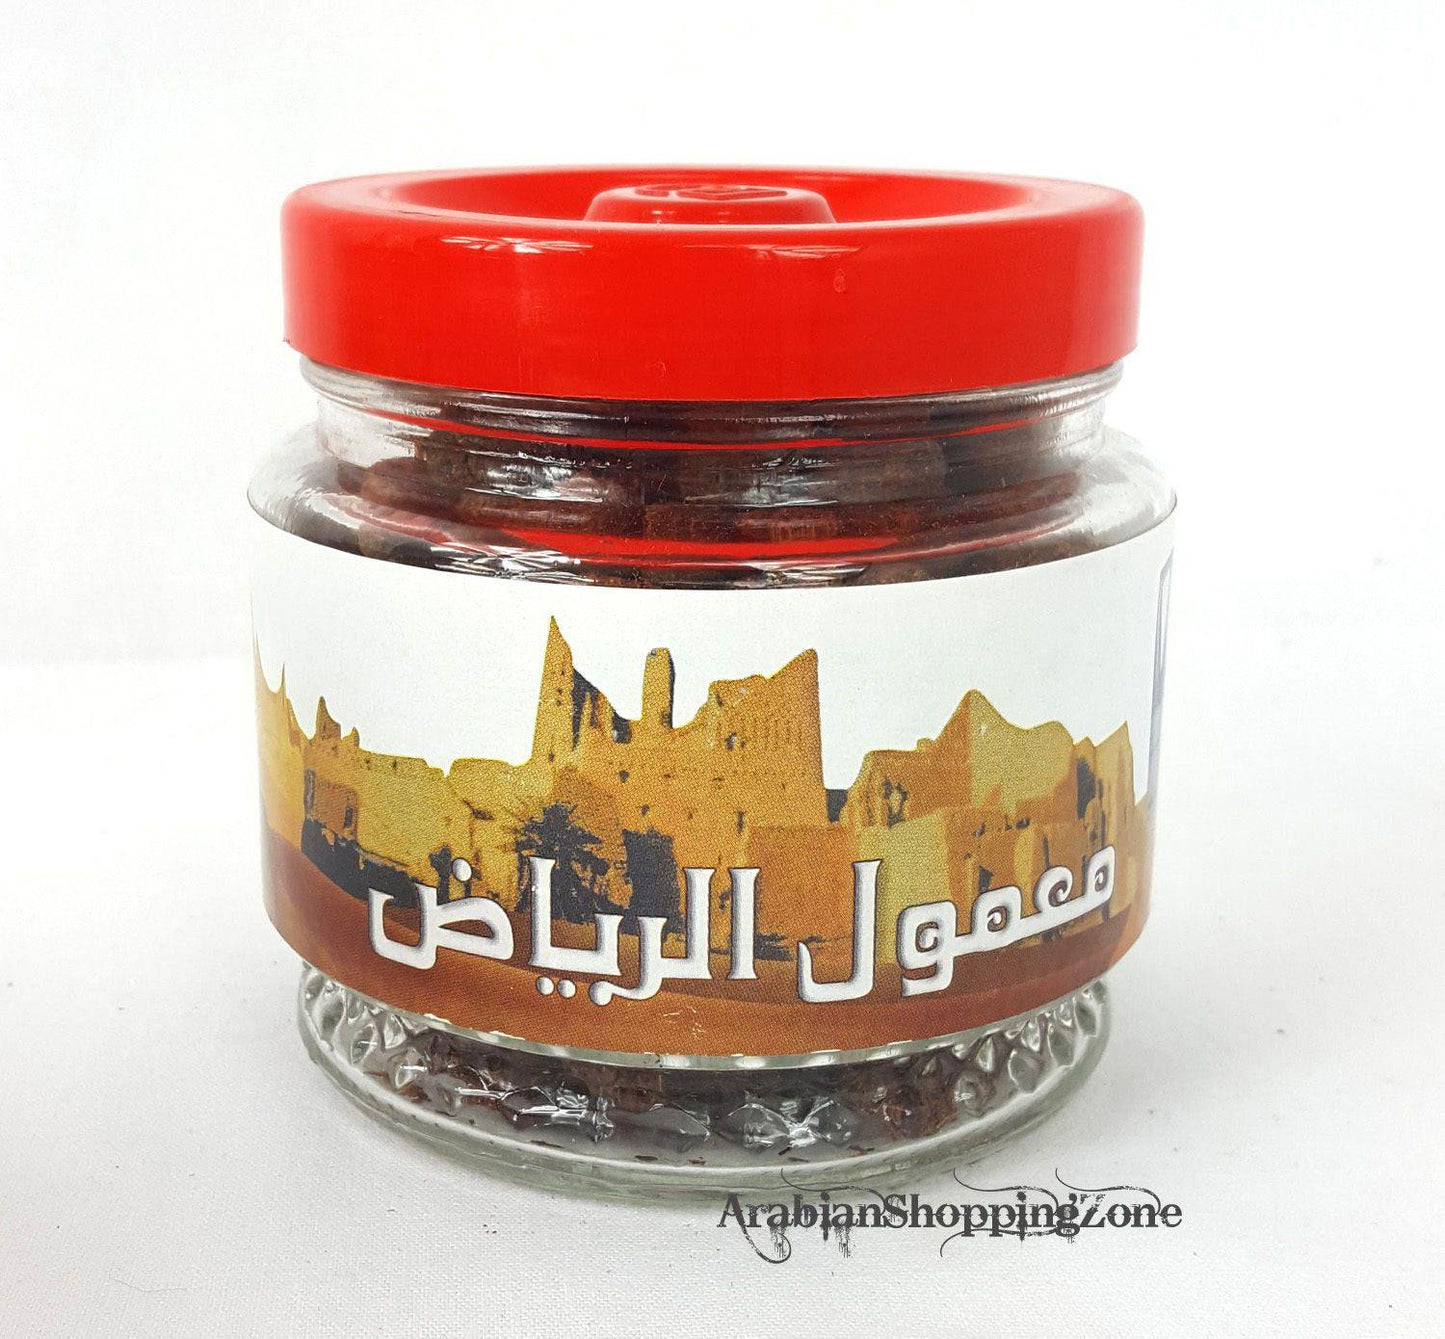 NEW Bigger Size Incense BANAFA Burning BAKHOOR Fragrance 250g (8.8oz) بخور - Arabian Shopping Zone